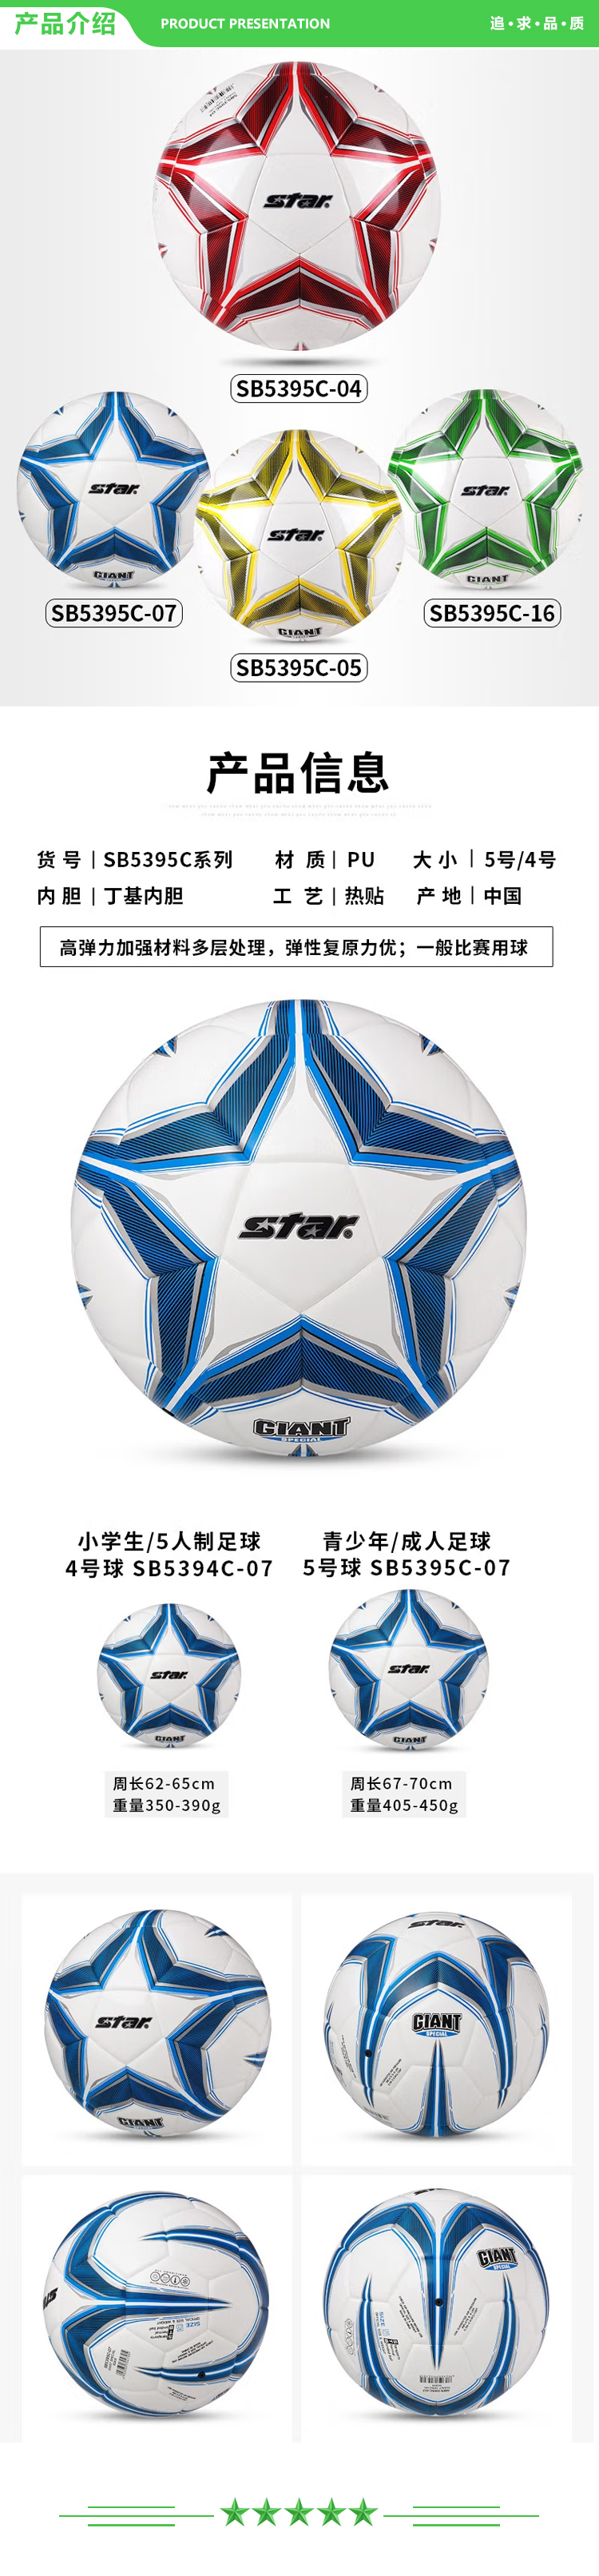 世达 star SB5395C-07（5号成人用球）足球 成人5号比赛训练用球成人青少年学生耐磨热贴合足球.jpg